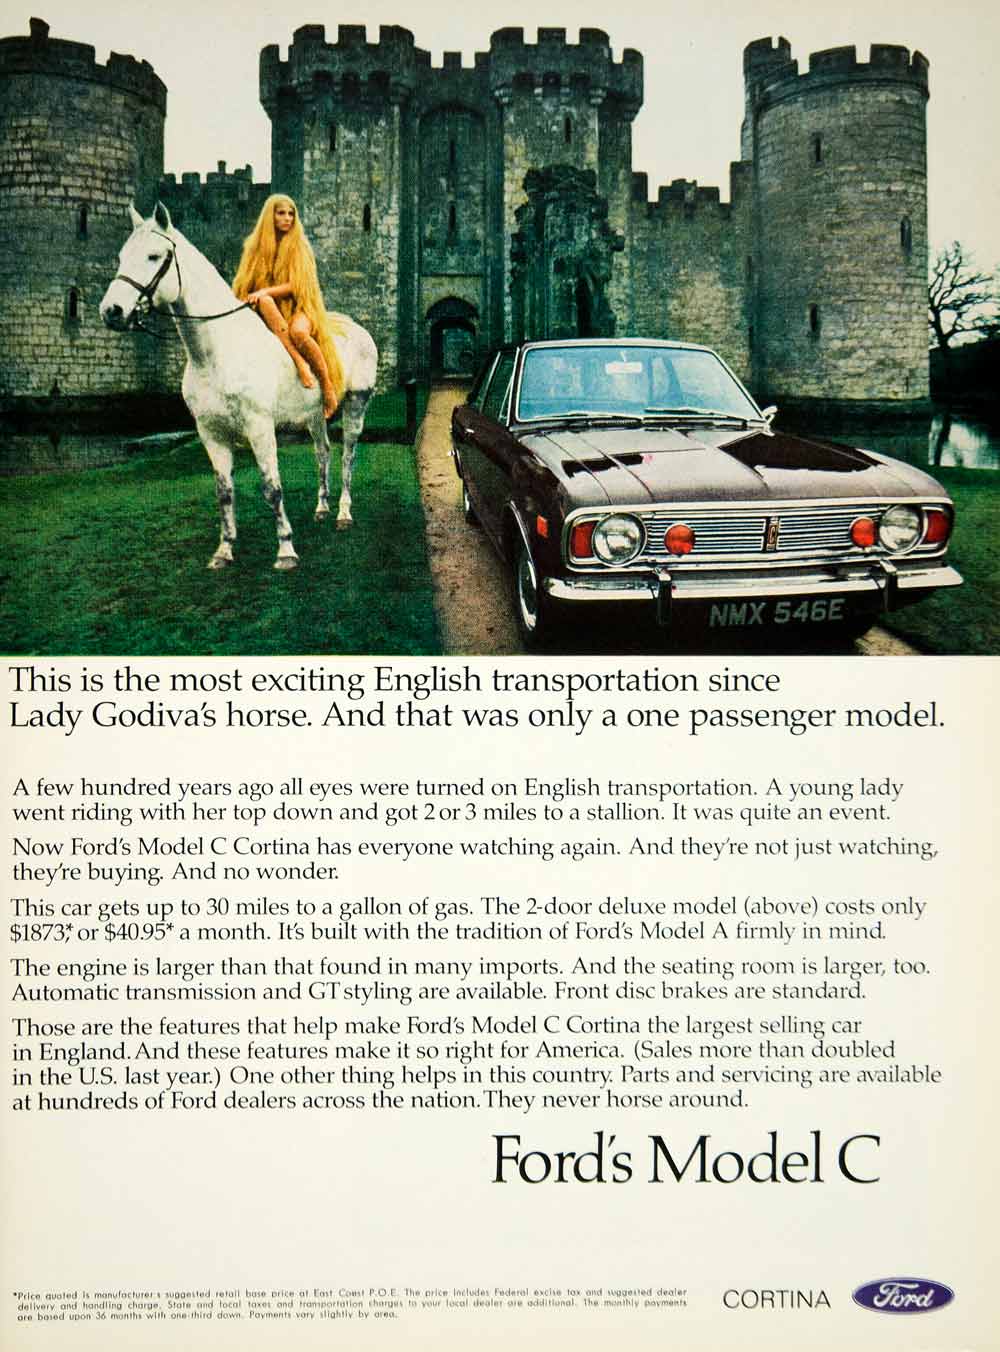 1968 Ad Ford Model C Cortina Automobile Nude Lady Godiva Horse Castle YMMA3